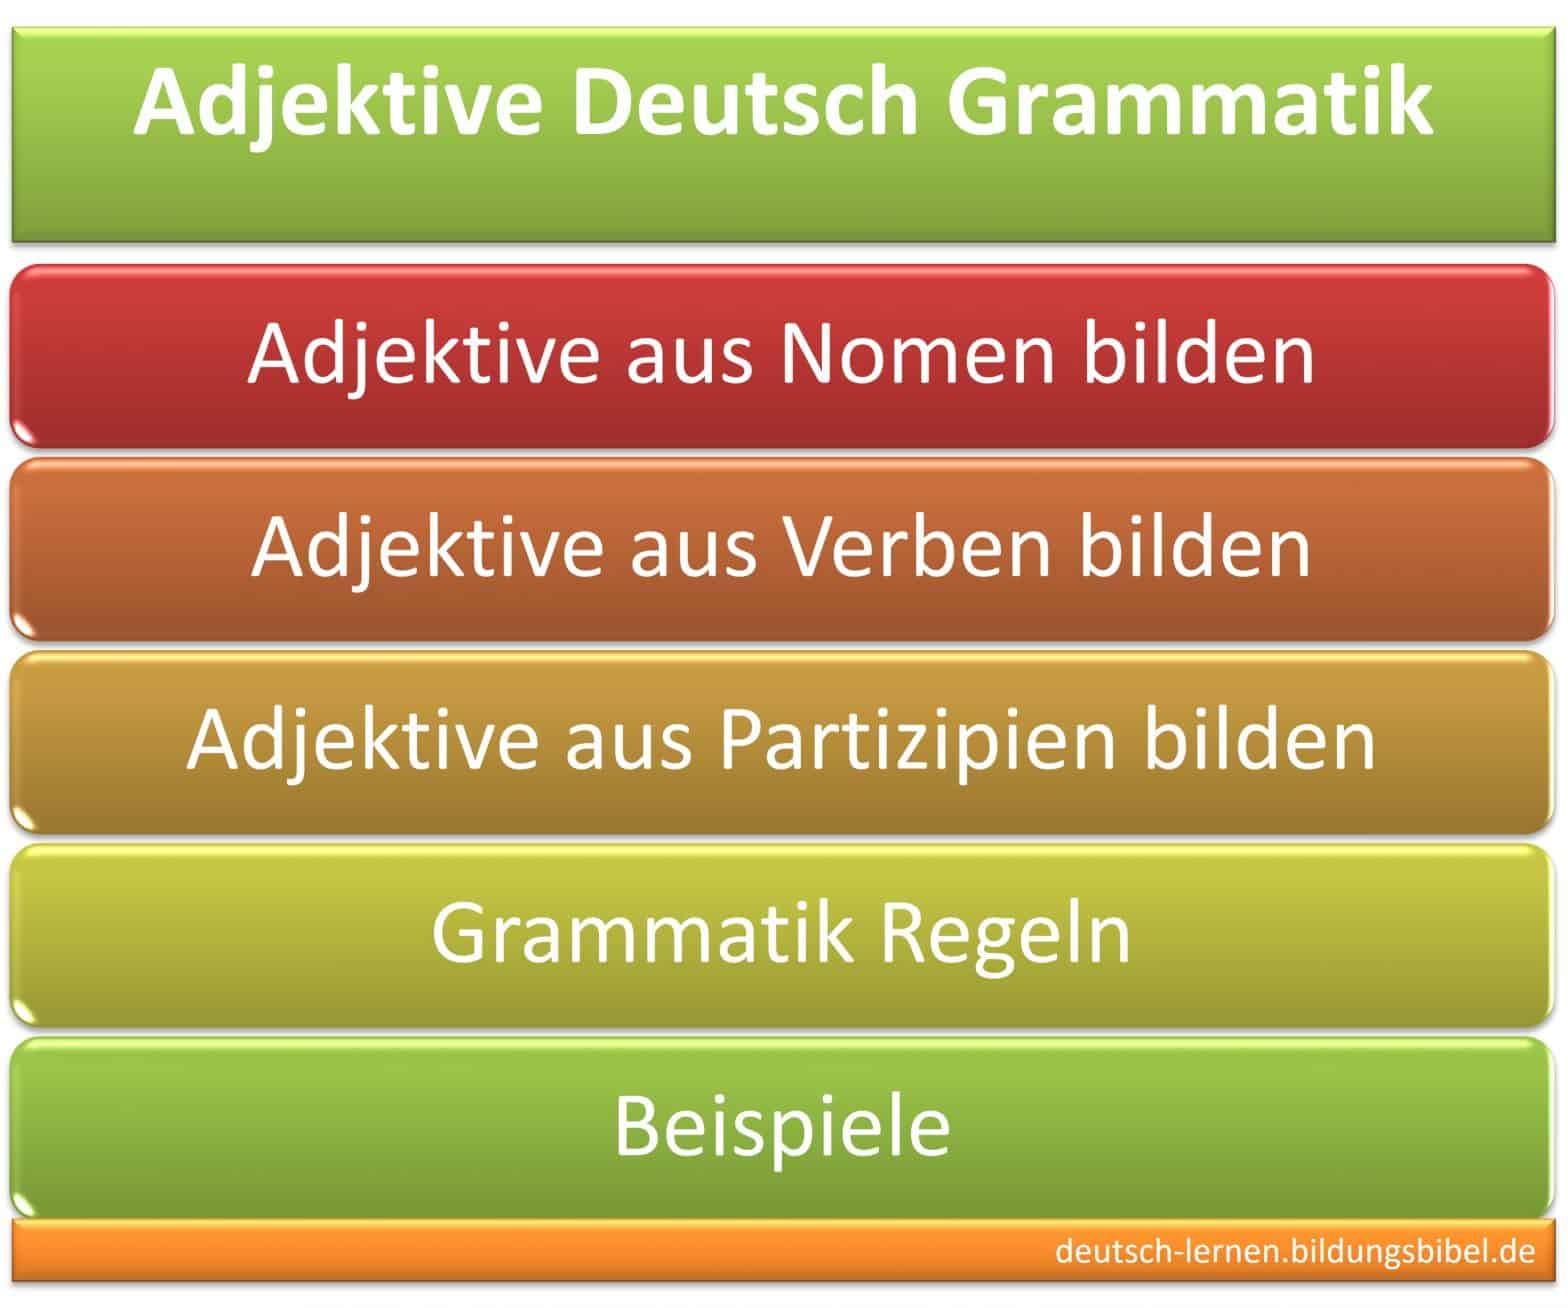 Adjektive bilden aus Nomen, Verben und Partizipien, Deutsch Grammatik erklärt einfach die Regeln anhand einem Beispiel.